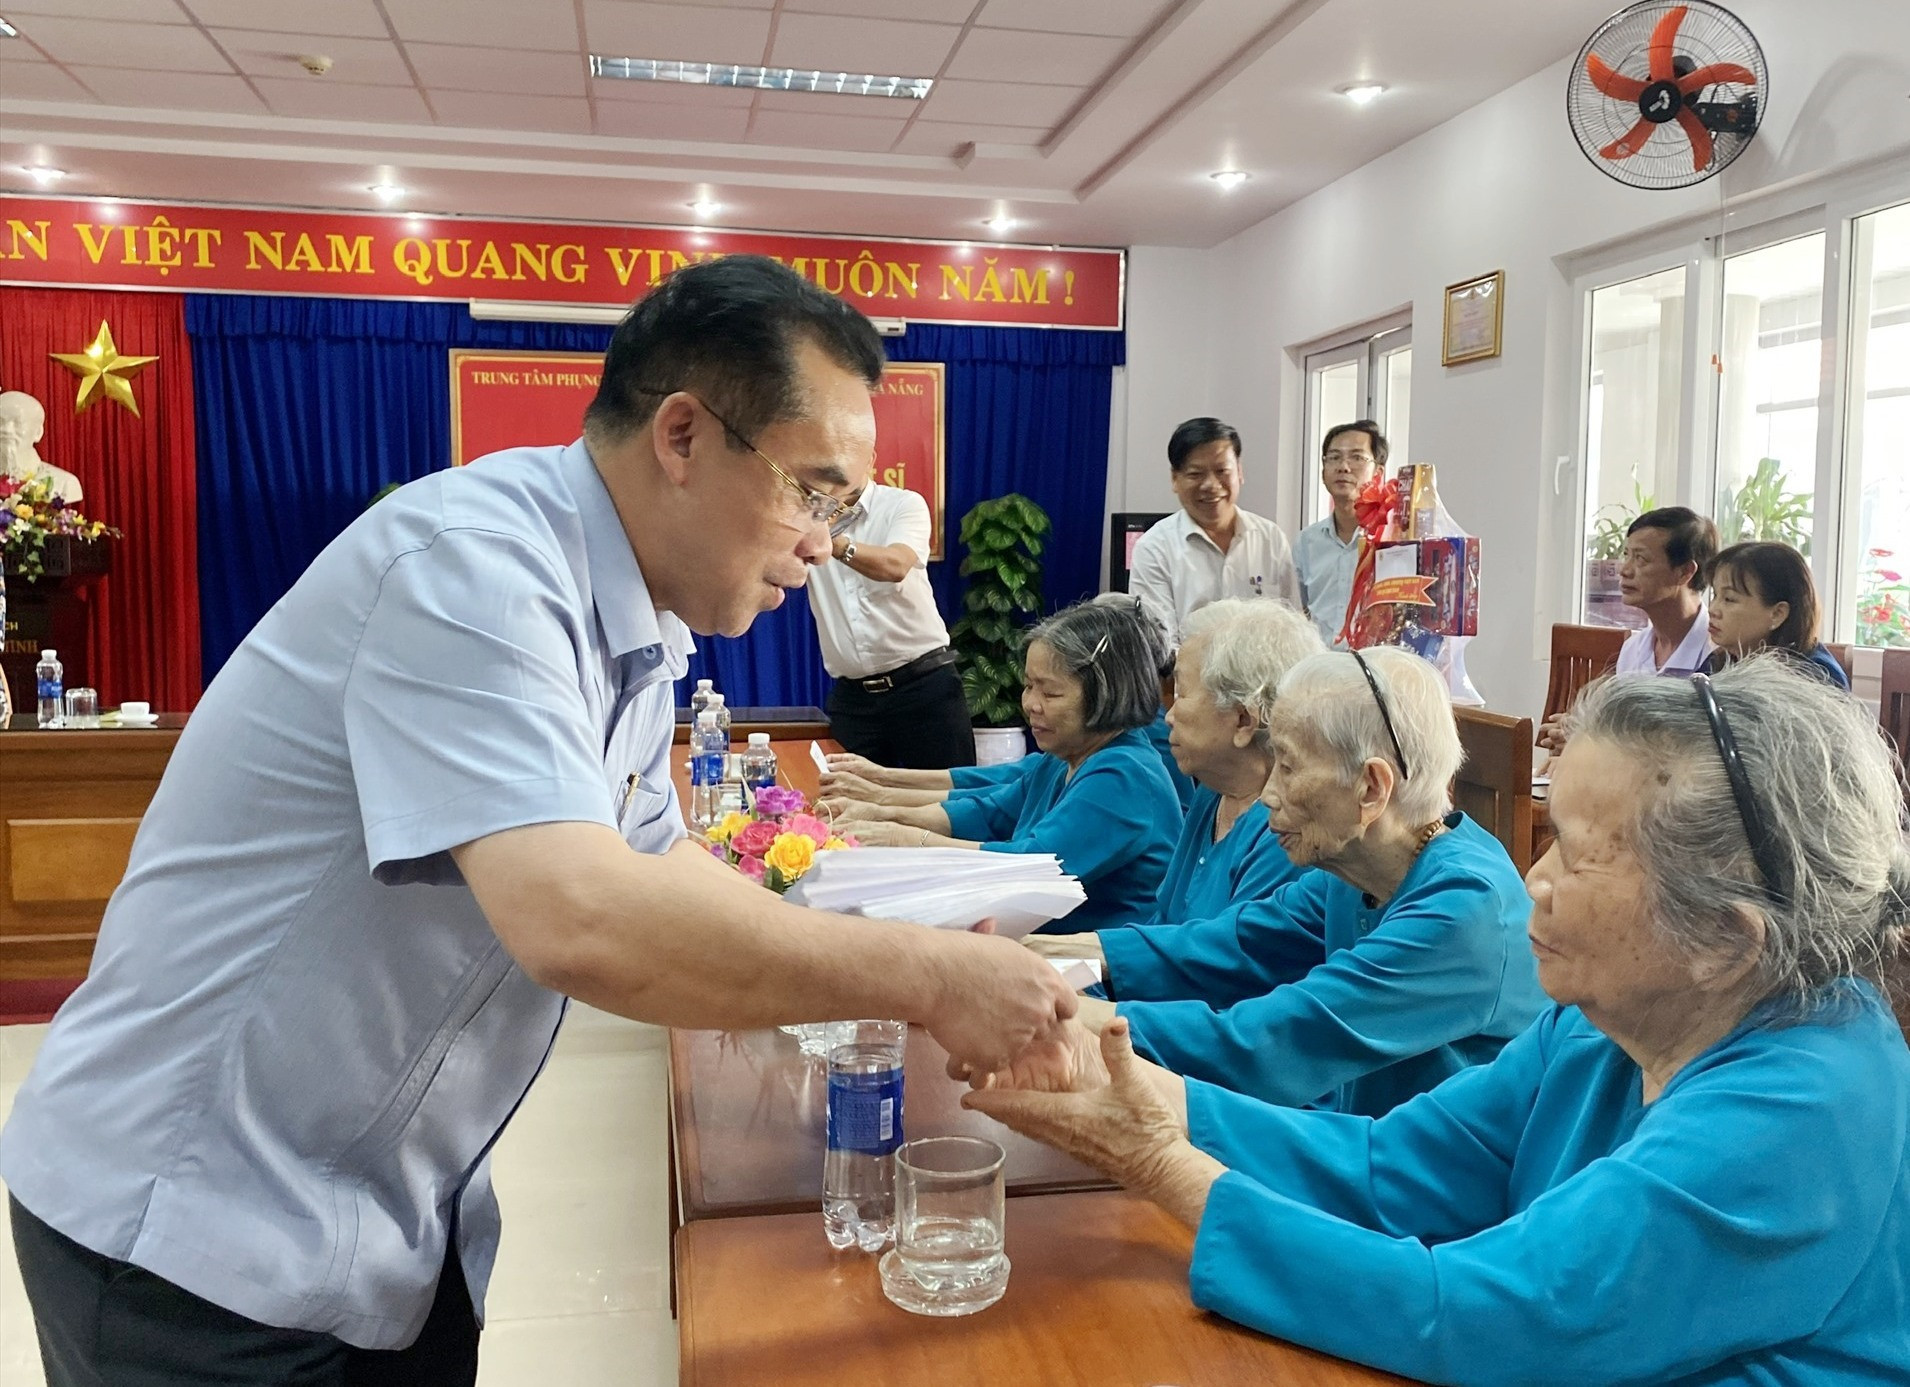 Phó Chủ tịch Trần An Tuấn tặng quà cho người có cống đang an dưỡng tại TP.Đà Nẵng. Ảnh: K.L